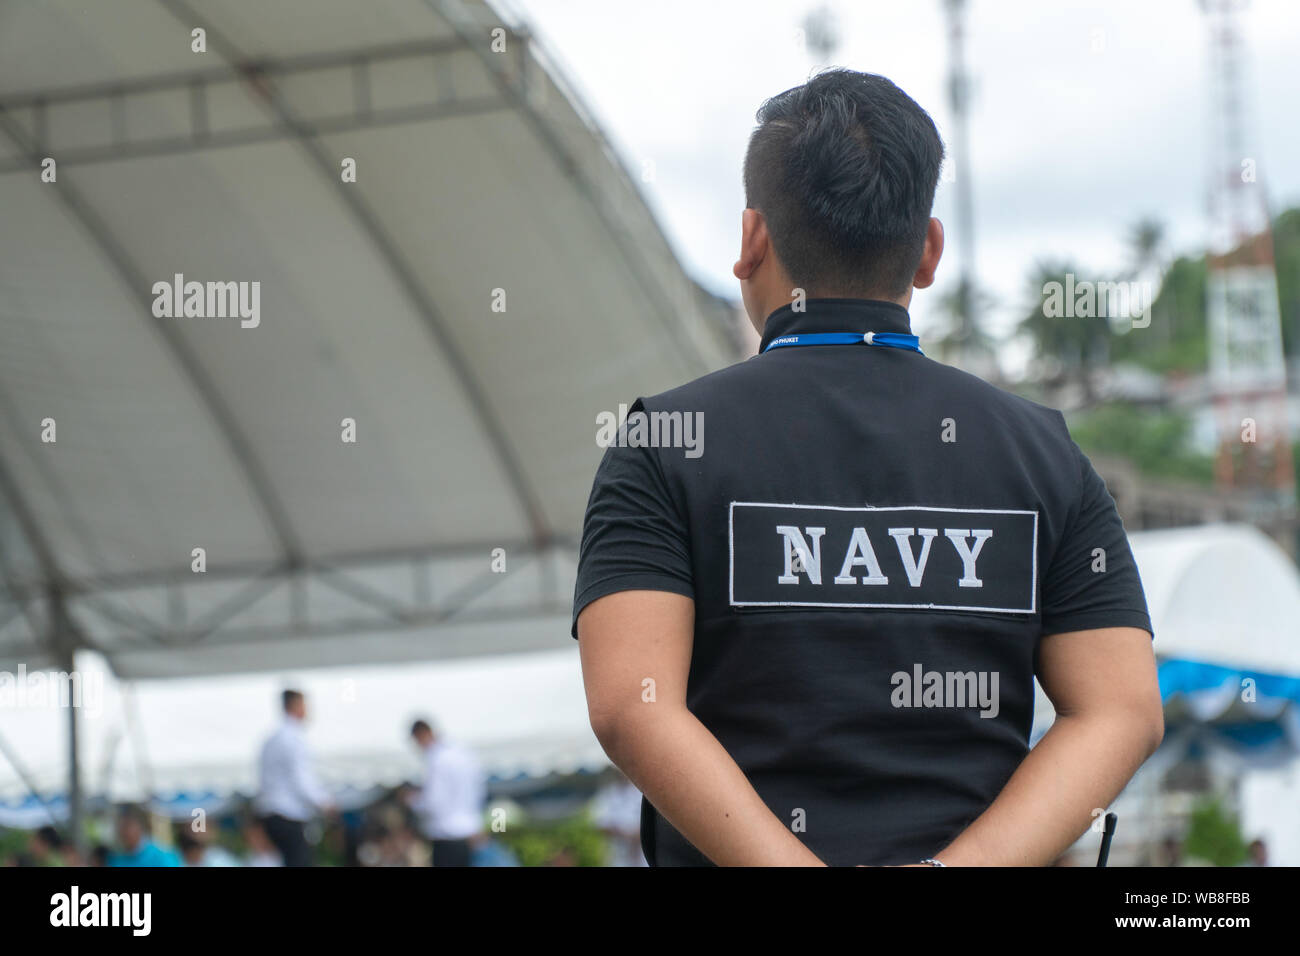 Les hommes sous la forme de personnel de sécurité de la marine thaïlandaise se tiennent prêts Banque D'Images